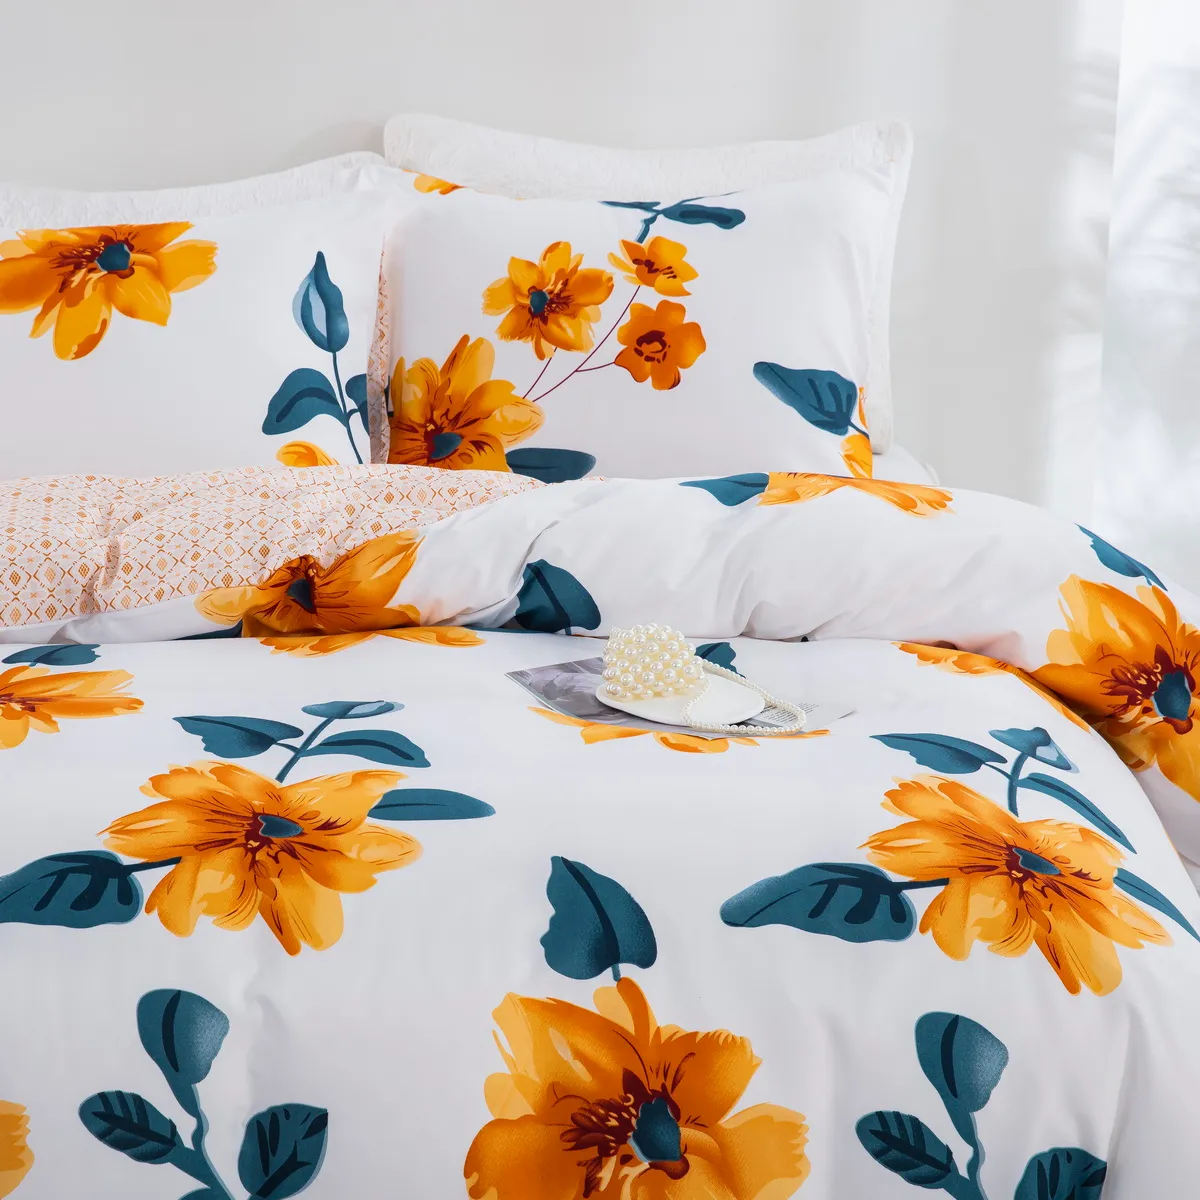 2/3 piezas de ropa de cama de diseño de margarita jacquard suave y cómoda, incluye funda nórdica y fundas de almohada multicolor big image 1